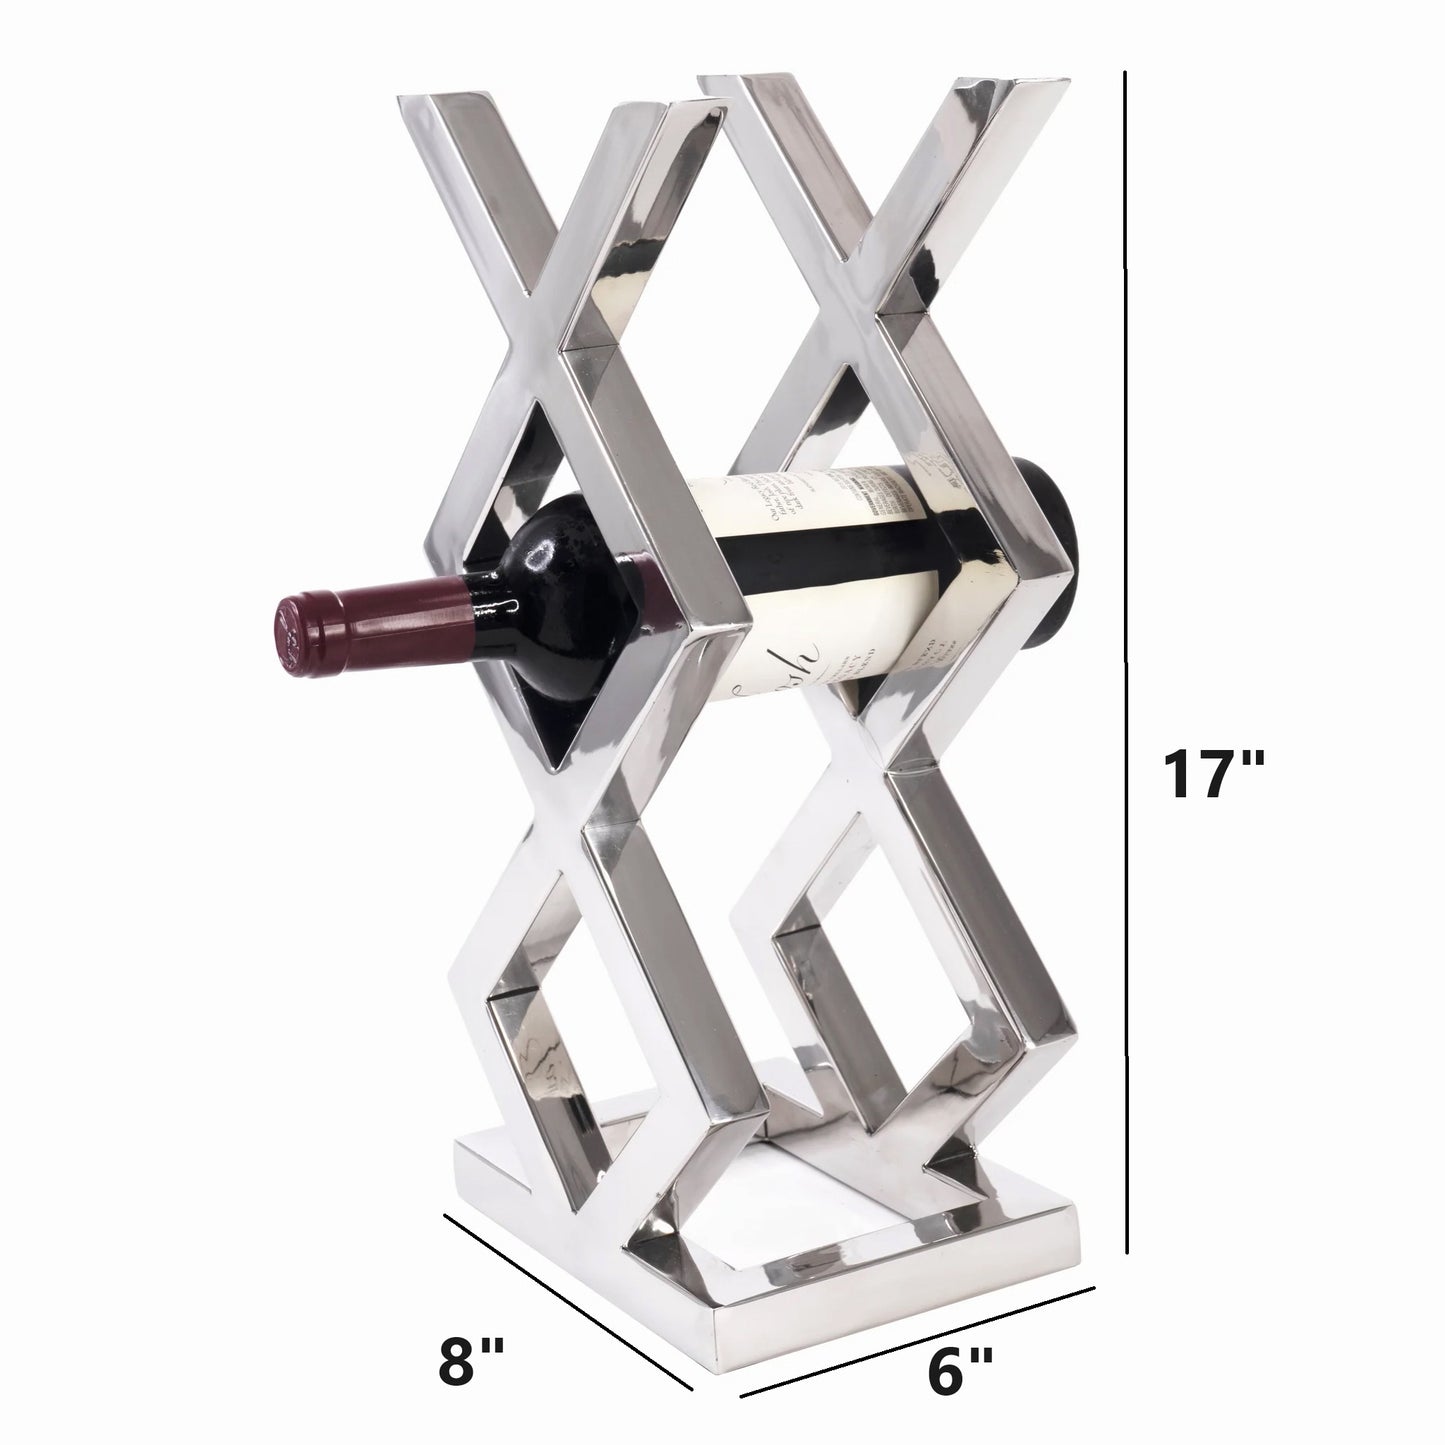 ROMBO 3 Bottle Stainless Steel Wine Holder